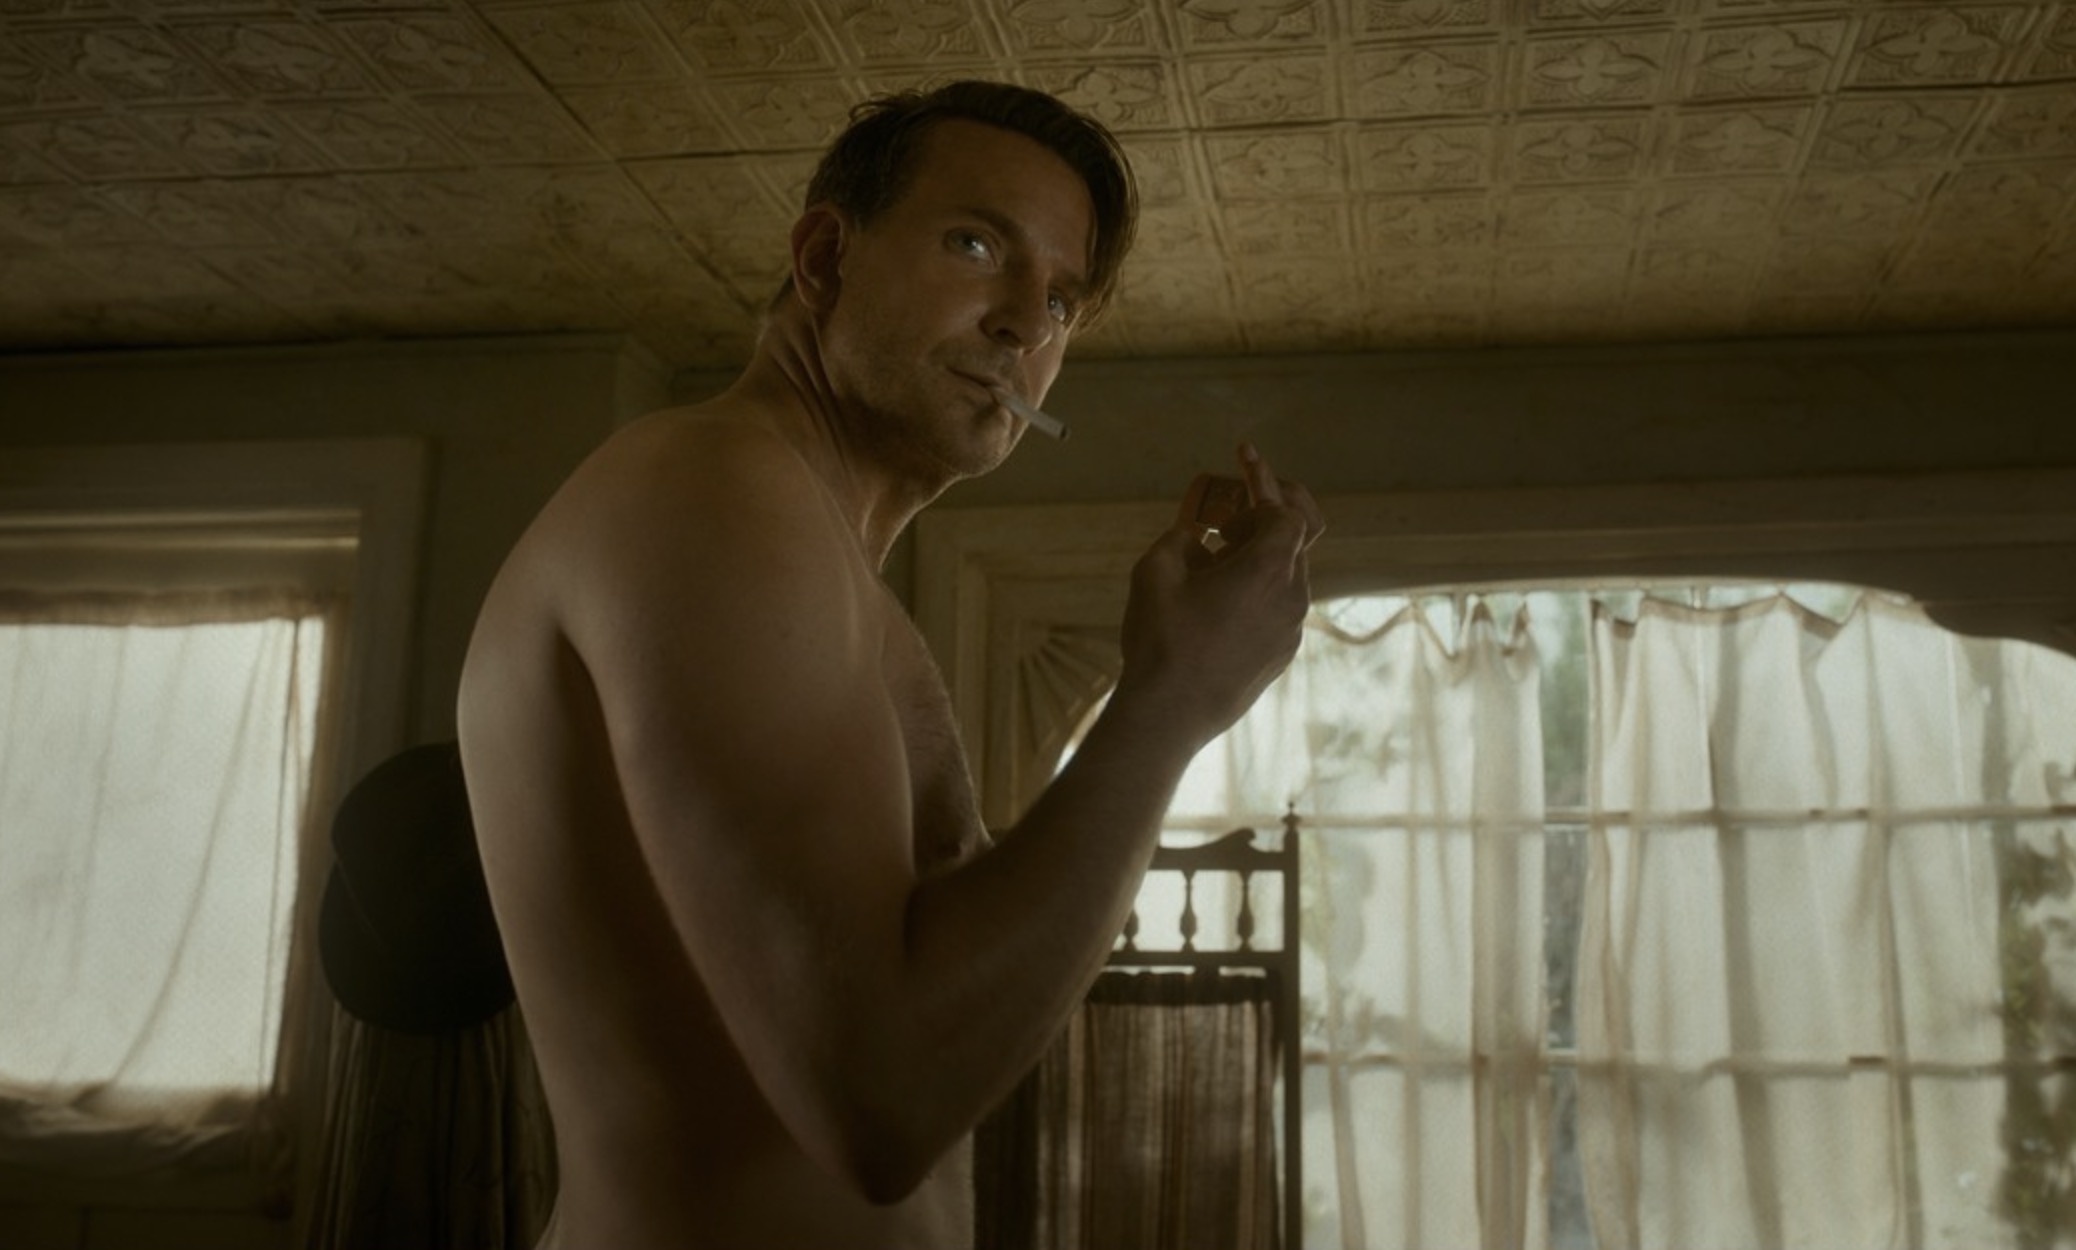 Bradley Cooper totalement nu dans son nouveau film, il se confie sur cette scène difficile à tourner